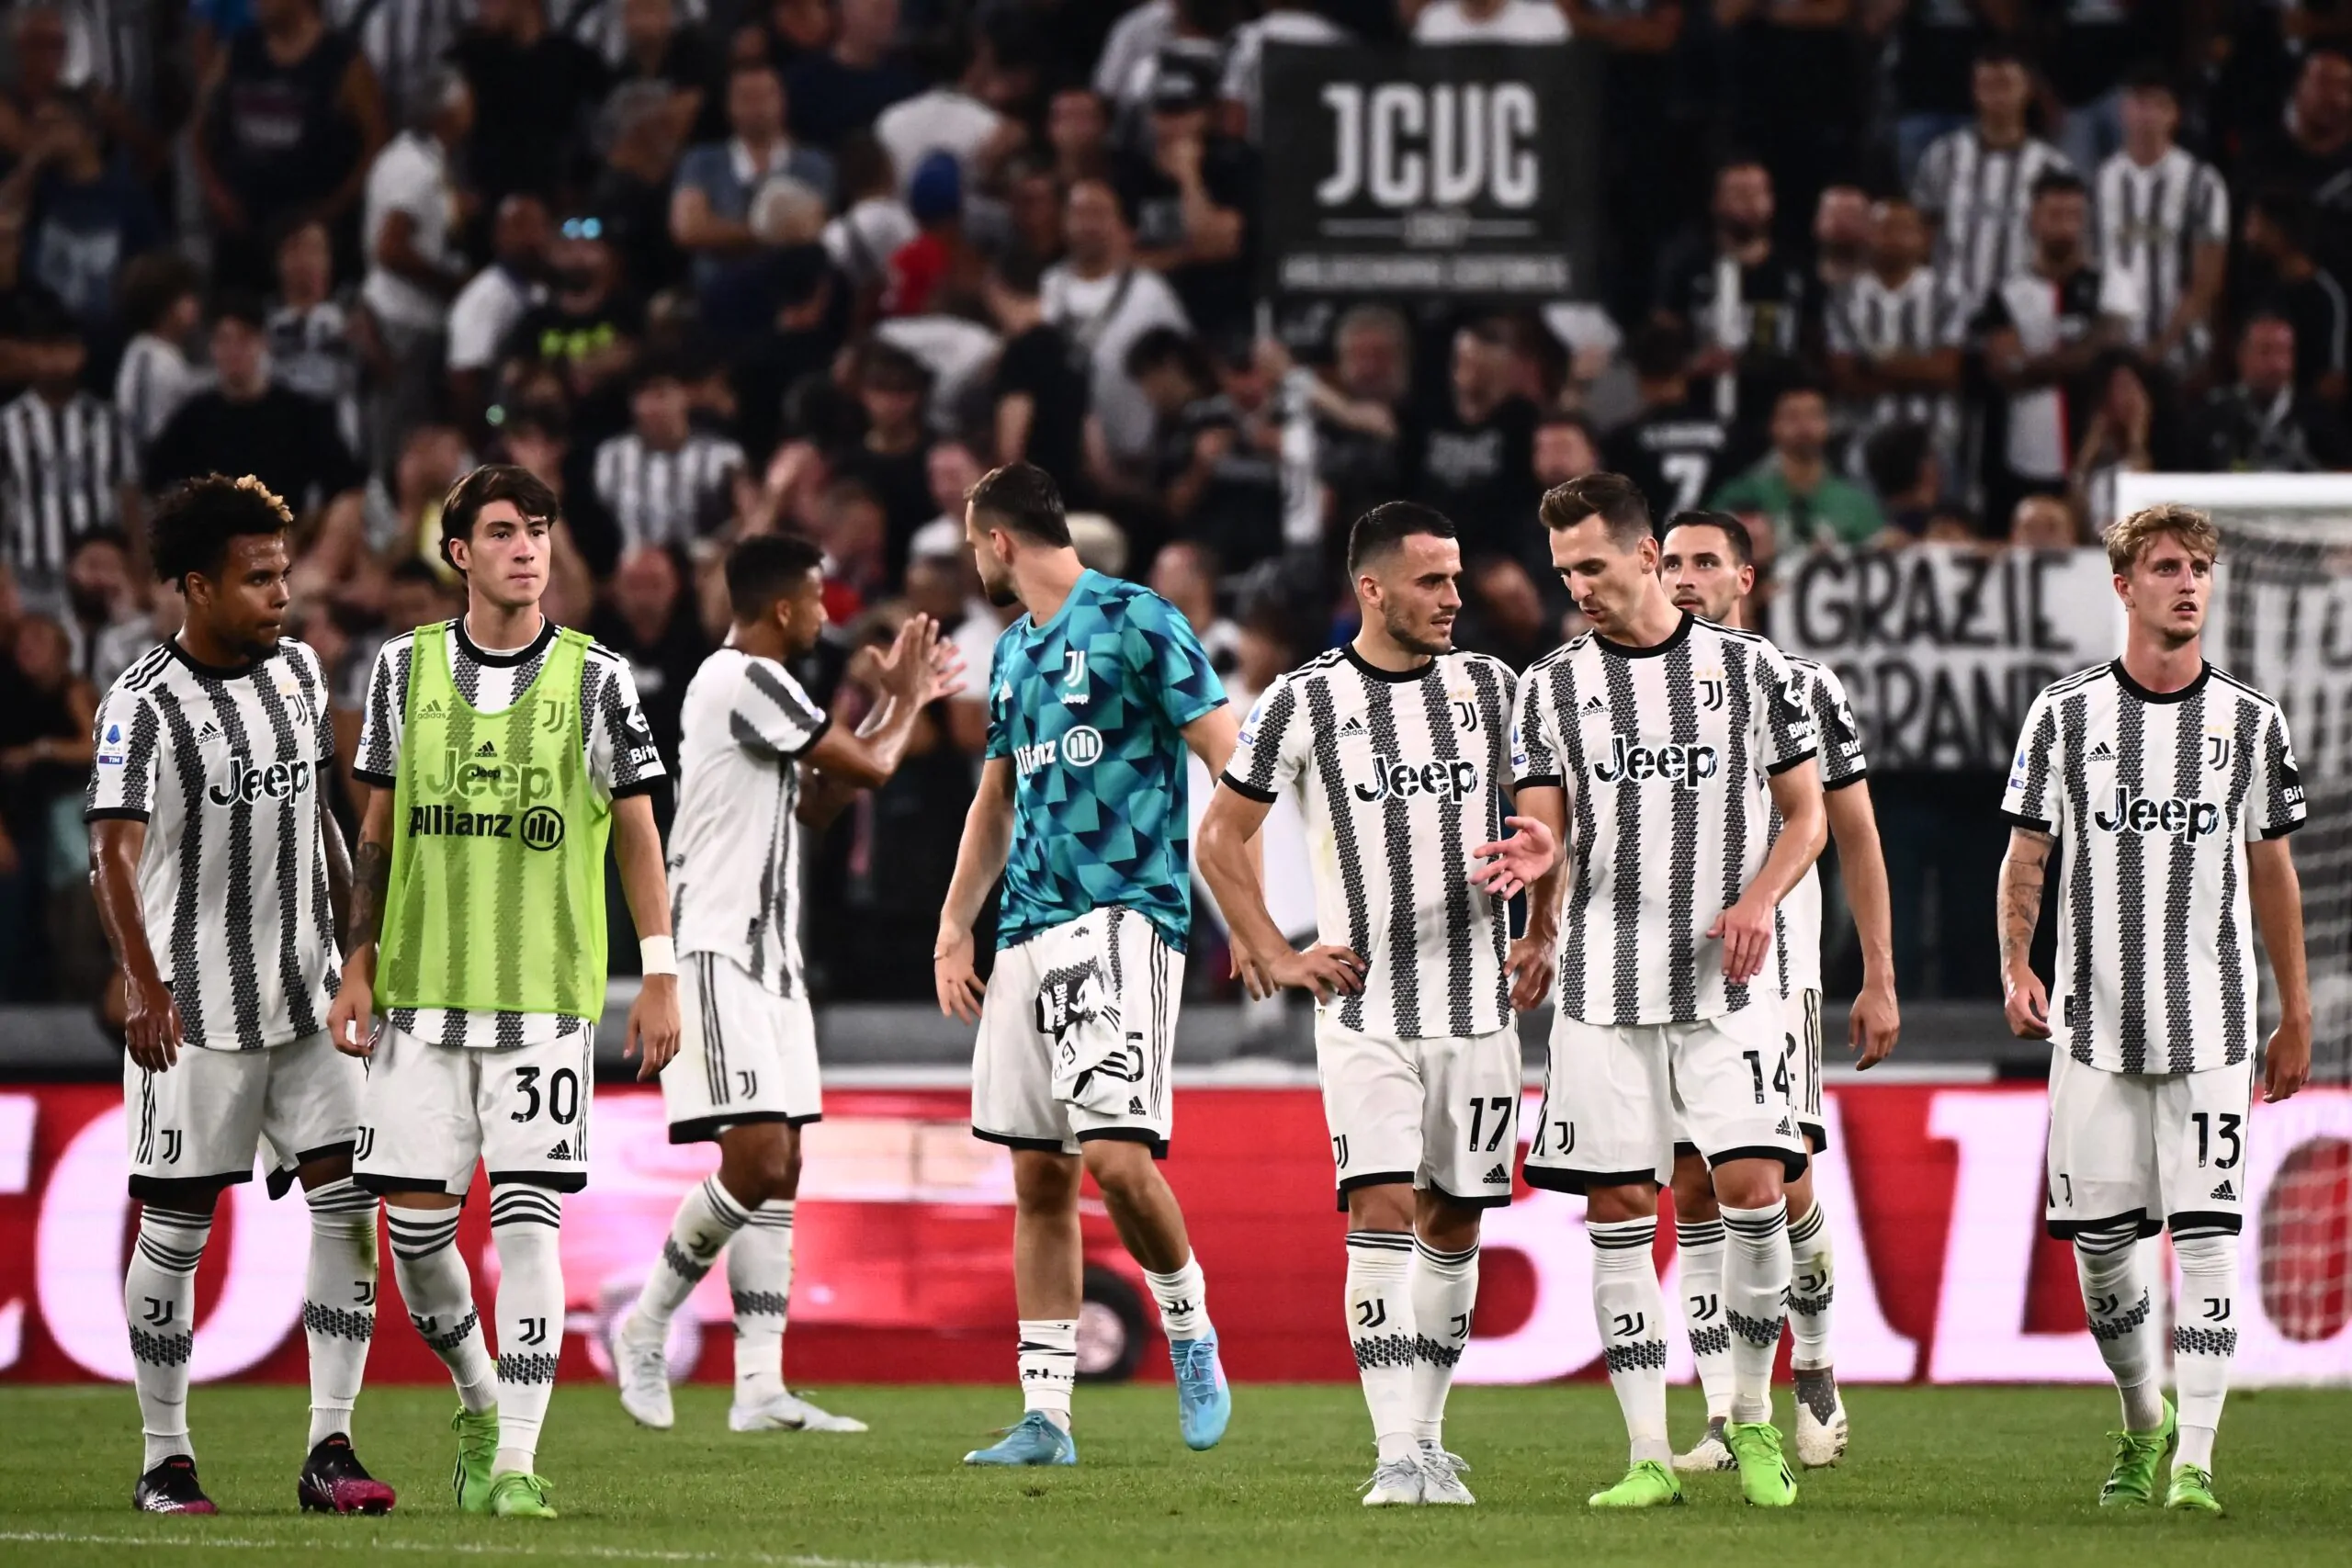 Di Marzio sicuro: “Tre giocatori pronti a lasciare la Juventus”